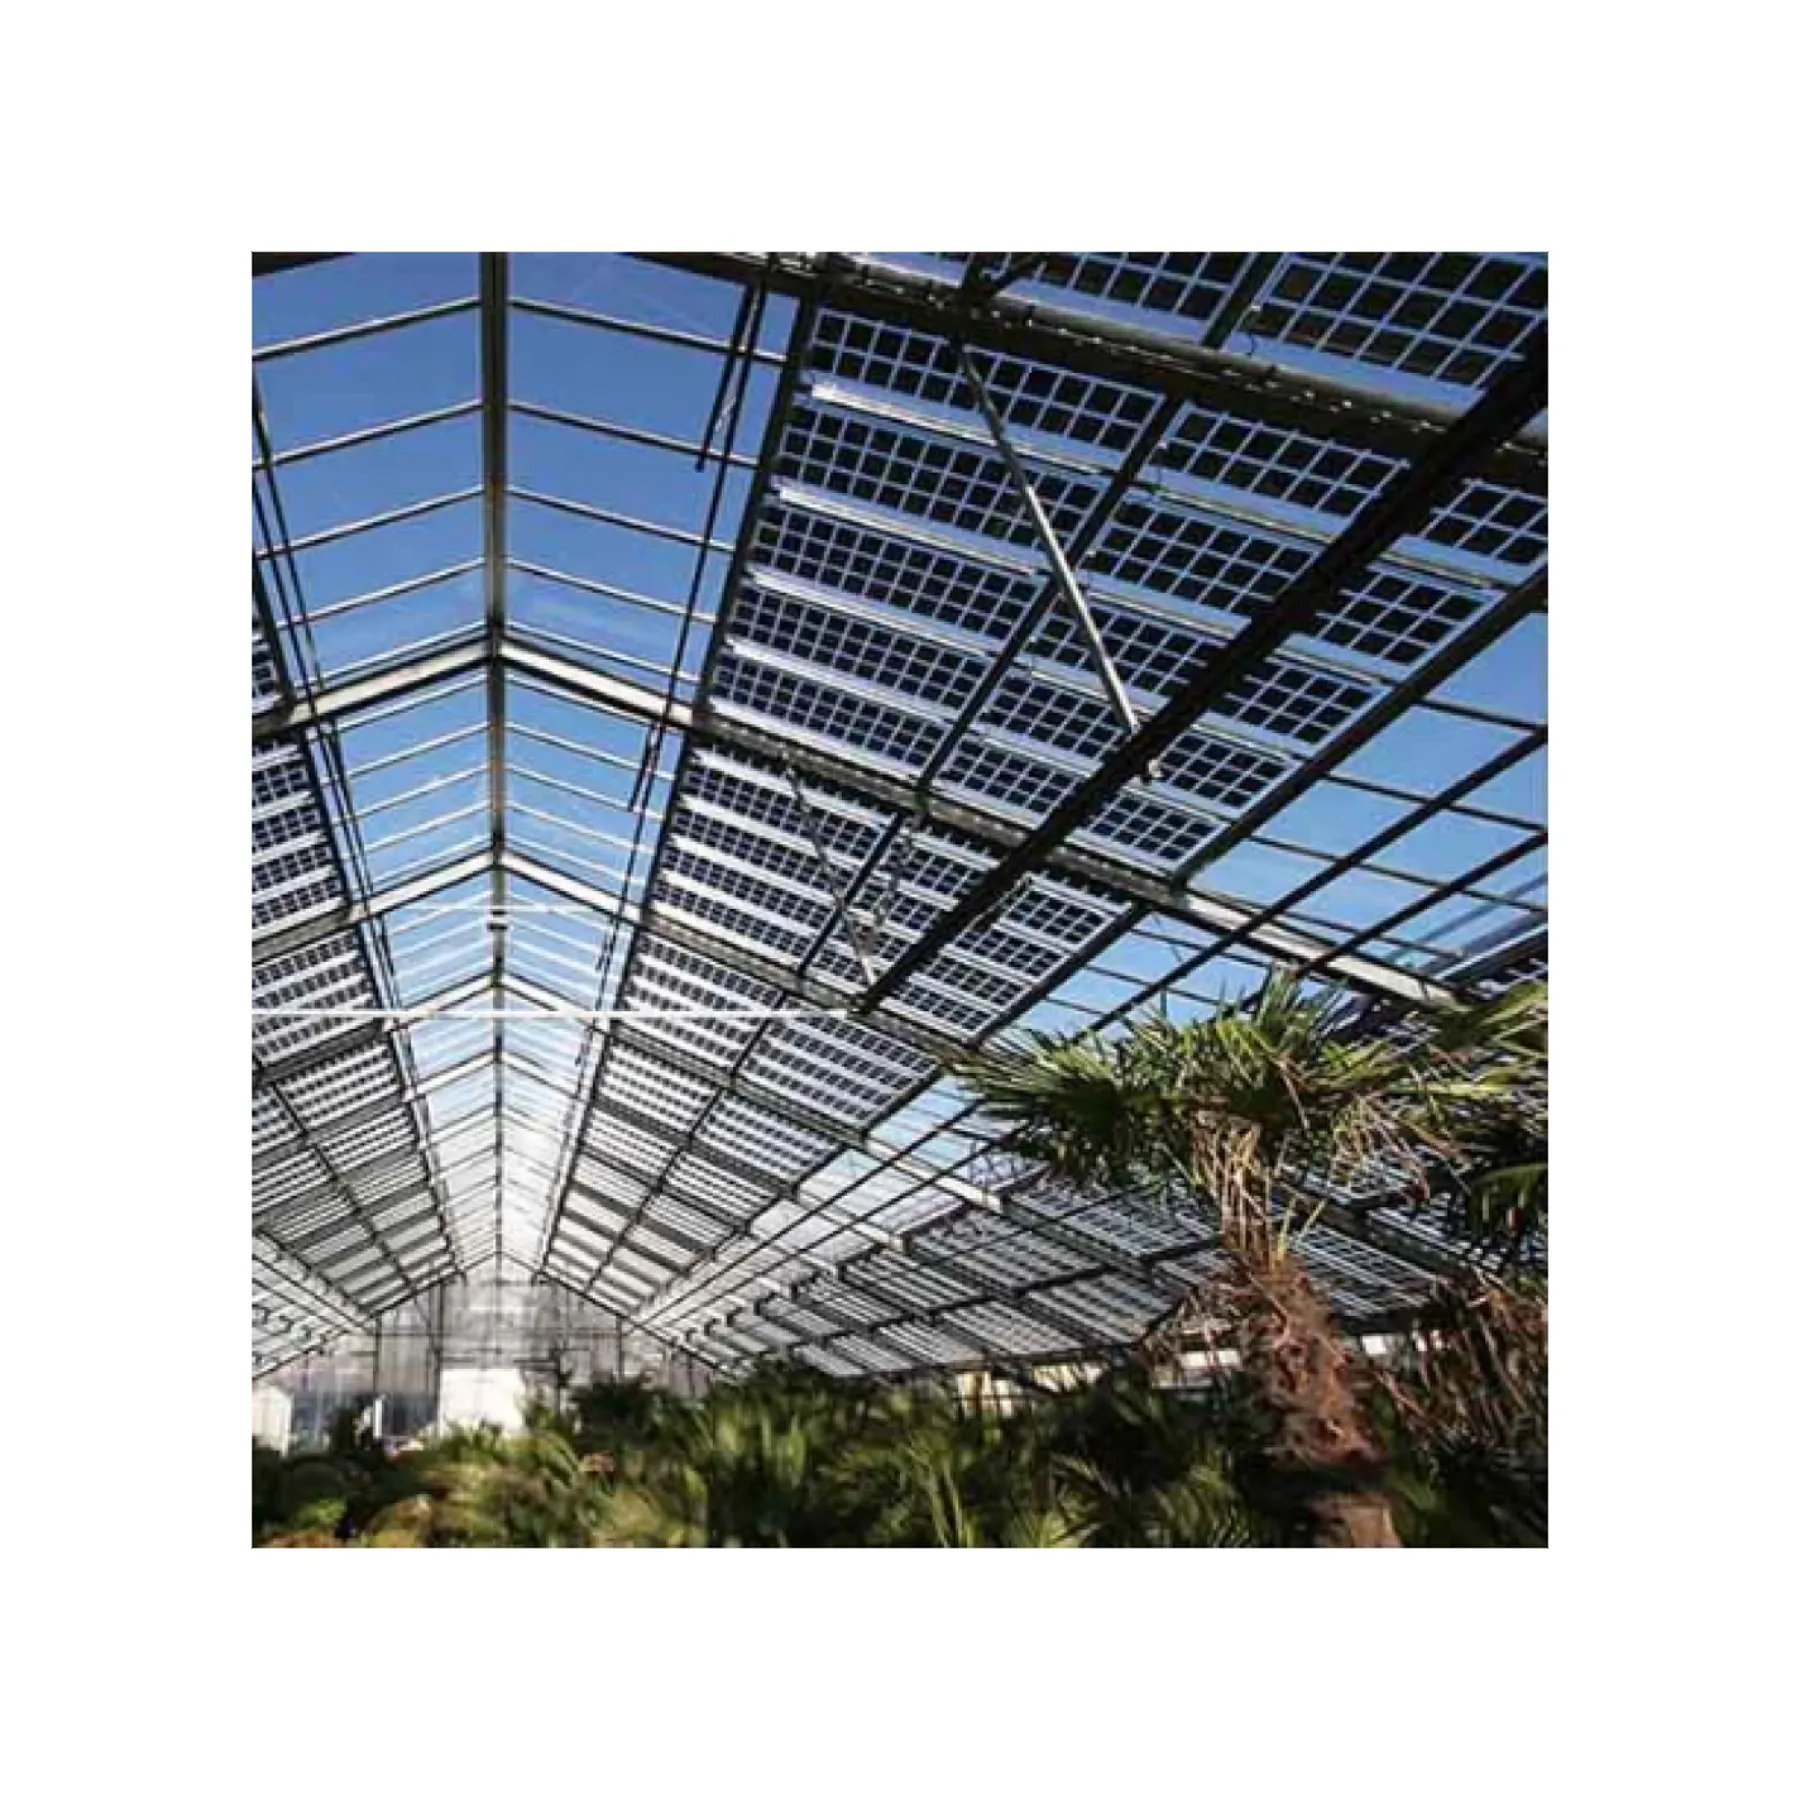 Bipv xây dựng tích hợp quang điện năng lượng mặt trời mái hệ thống năng lượng mặt trời dach tuiles solaires năng lượng mặt trời mái ván lợp ngói